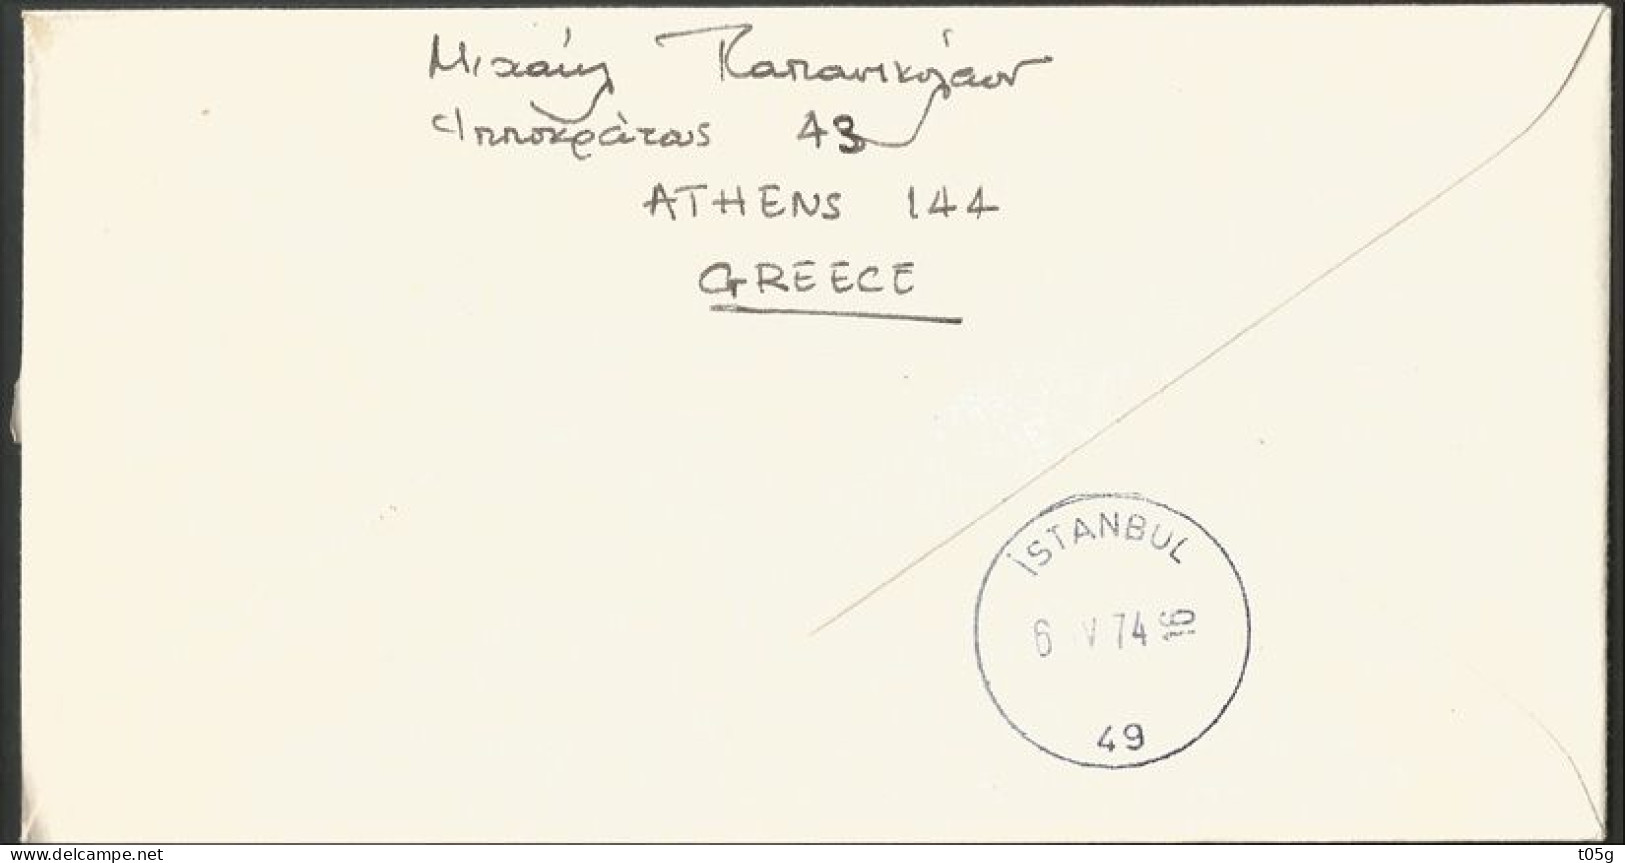 First Flight GREECE- GRECE- HELLAS: 6-4-1974  Cover Thessaloniki-Istambul AUSTRIAN AIRLINES - Briefe U. Dokumente